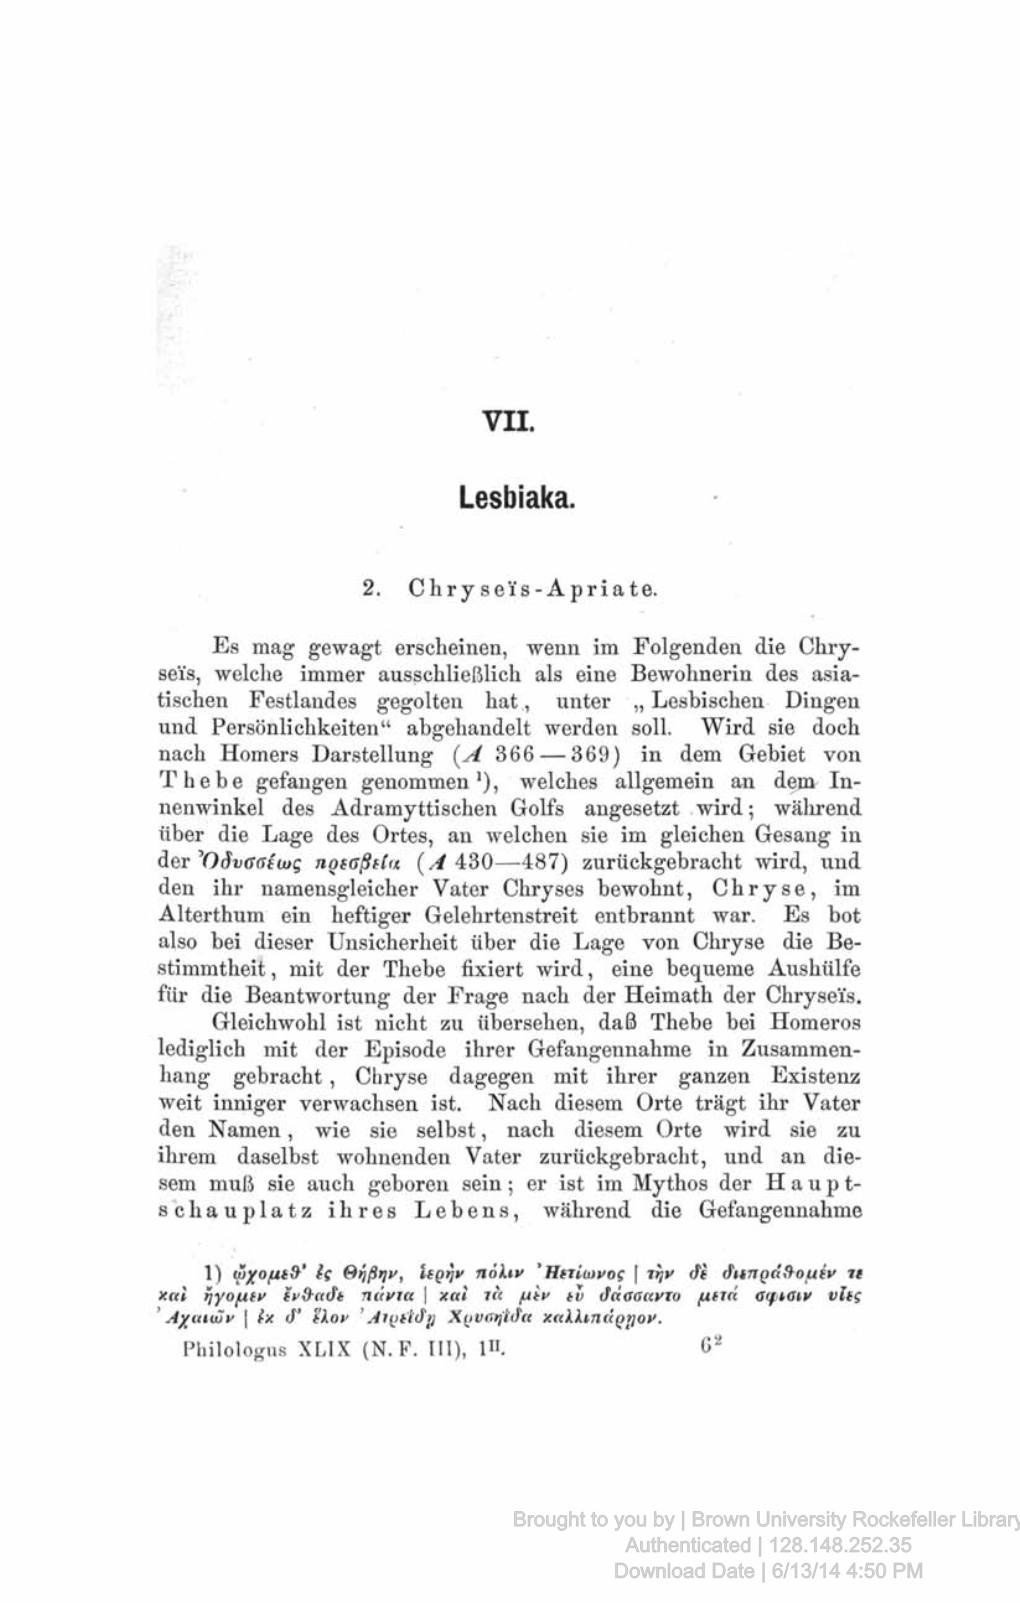 VII. Lesbiaka